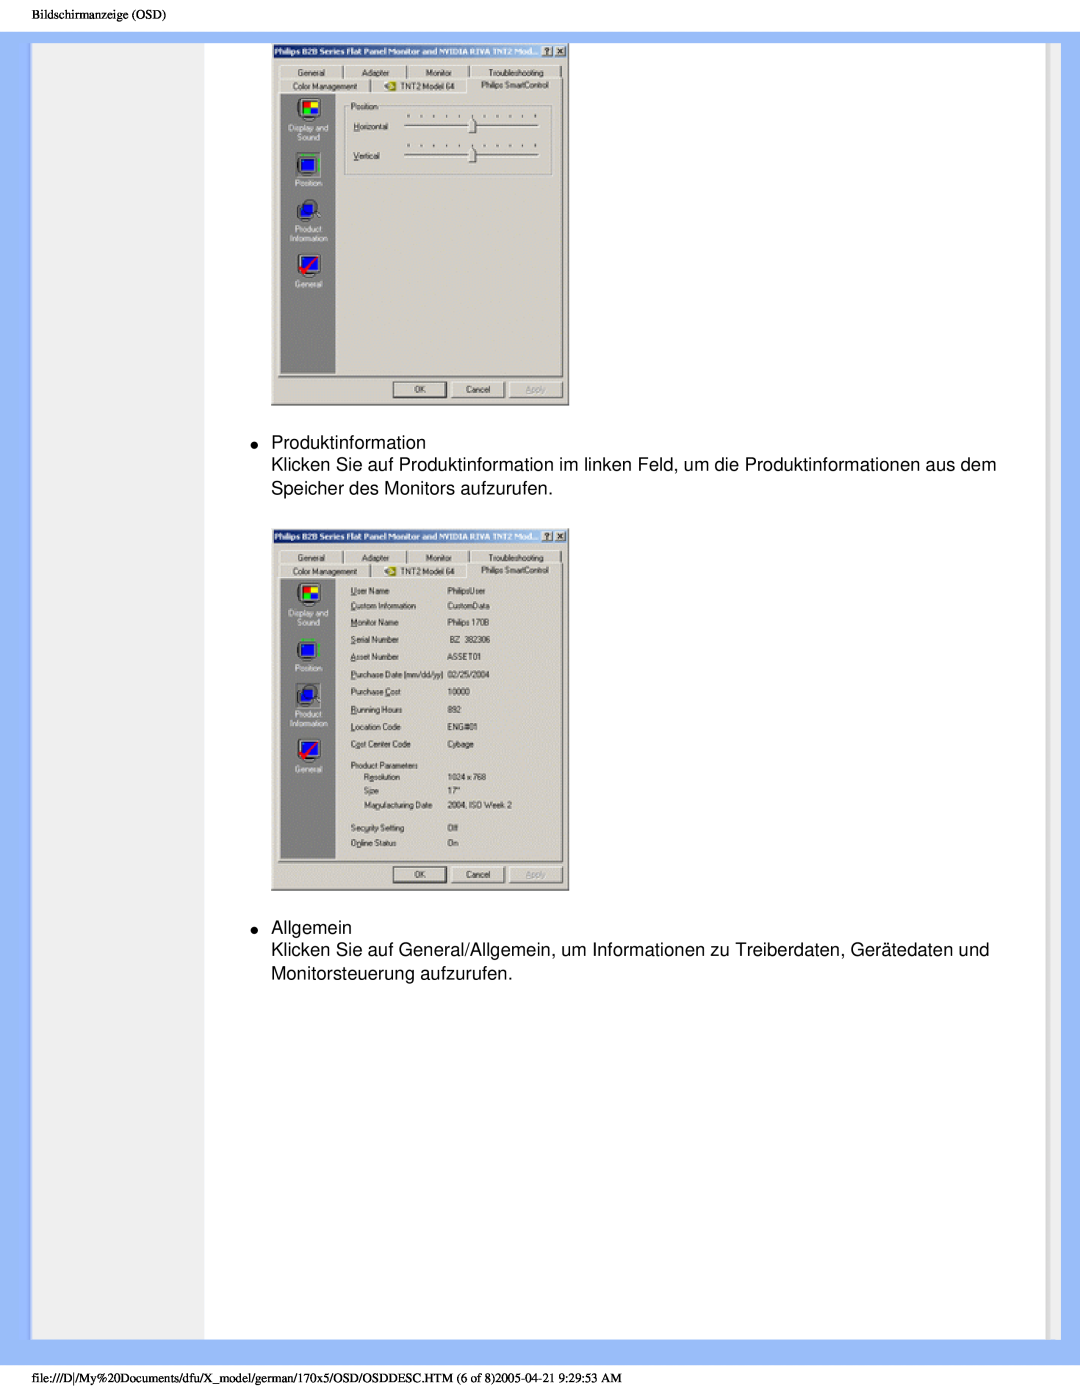 Philips 170X5FB/93, 170X5FB/00 user manual Produktinformation, Allgemein, Bildschirmanzeige OSD 